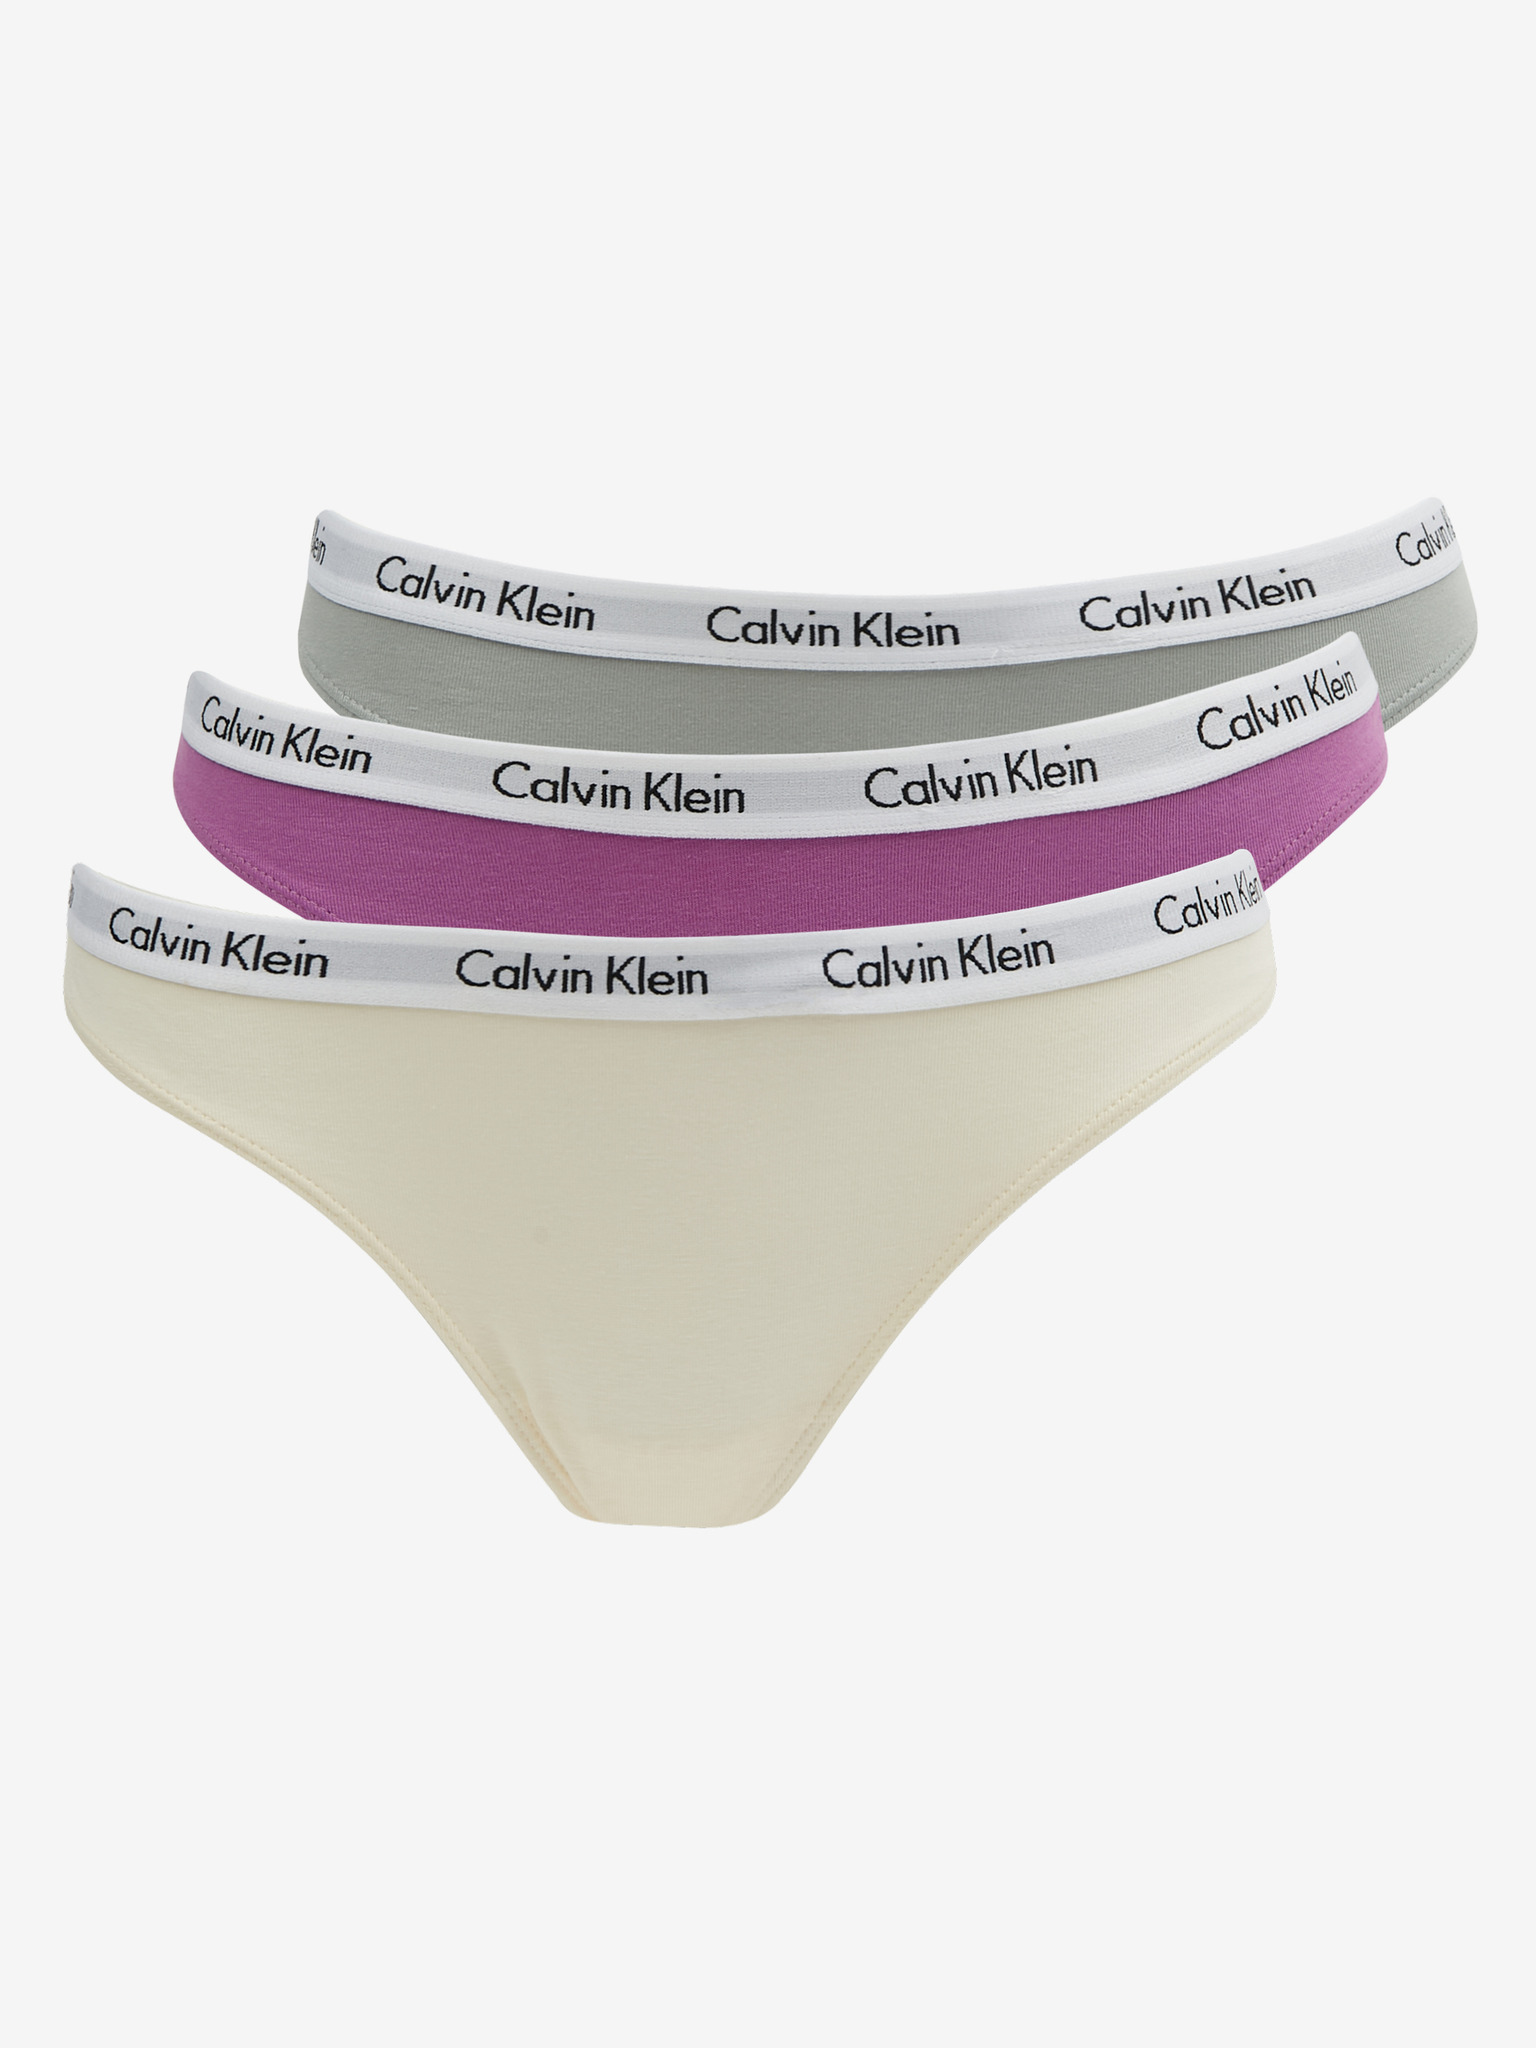 Geruststellen haar belangrijk Calvin Klein Underwear - 3-pack Slip Bibloo.nl